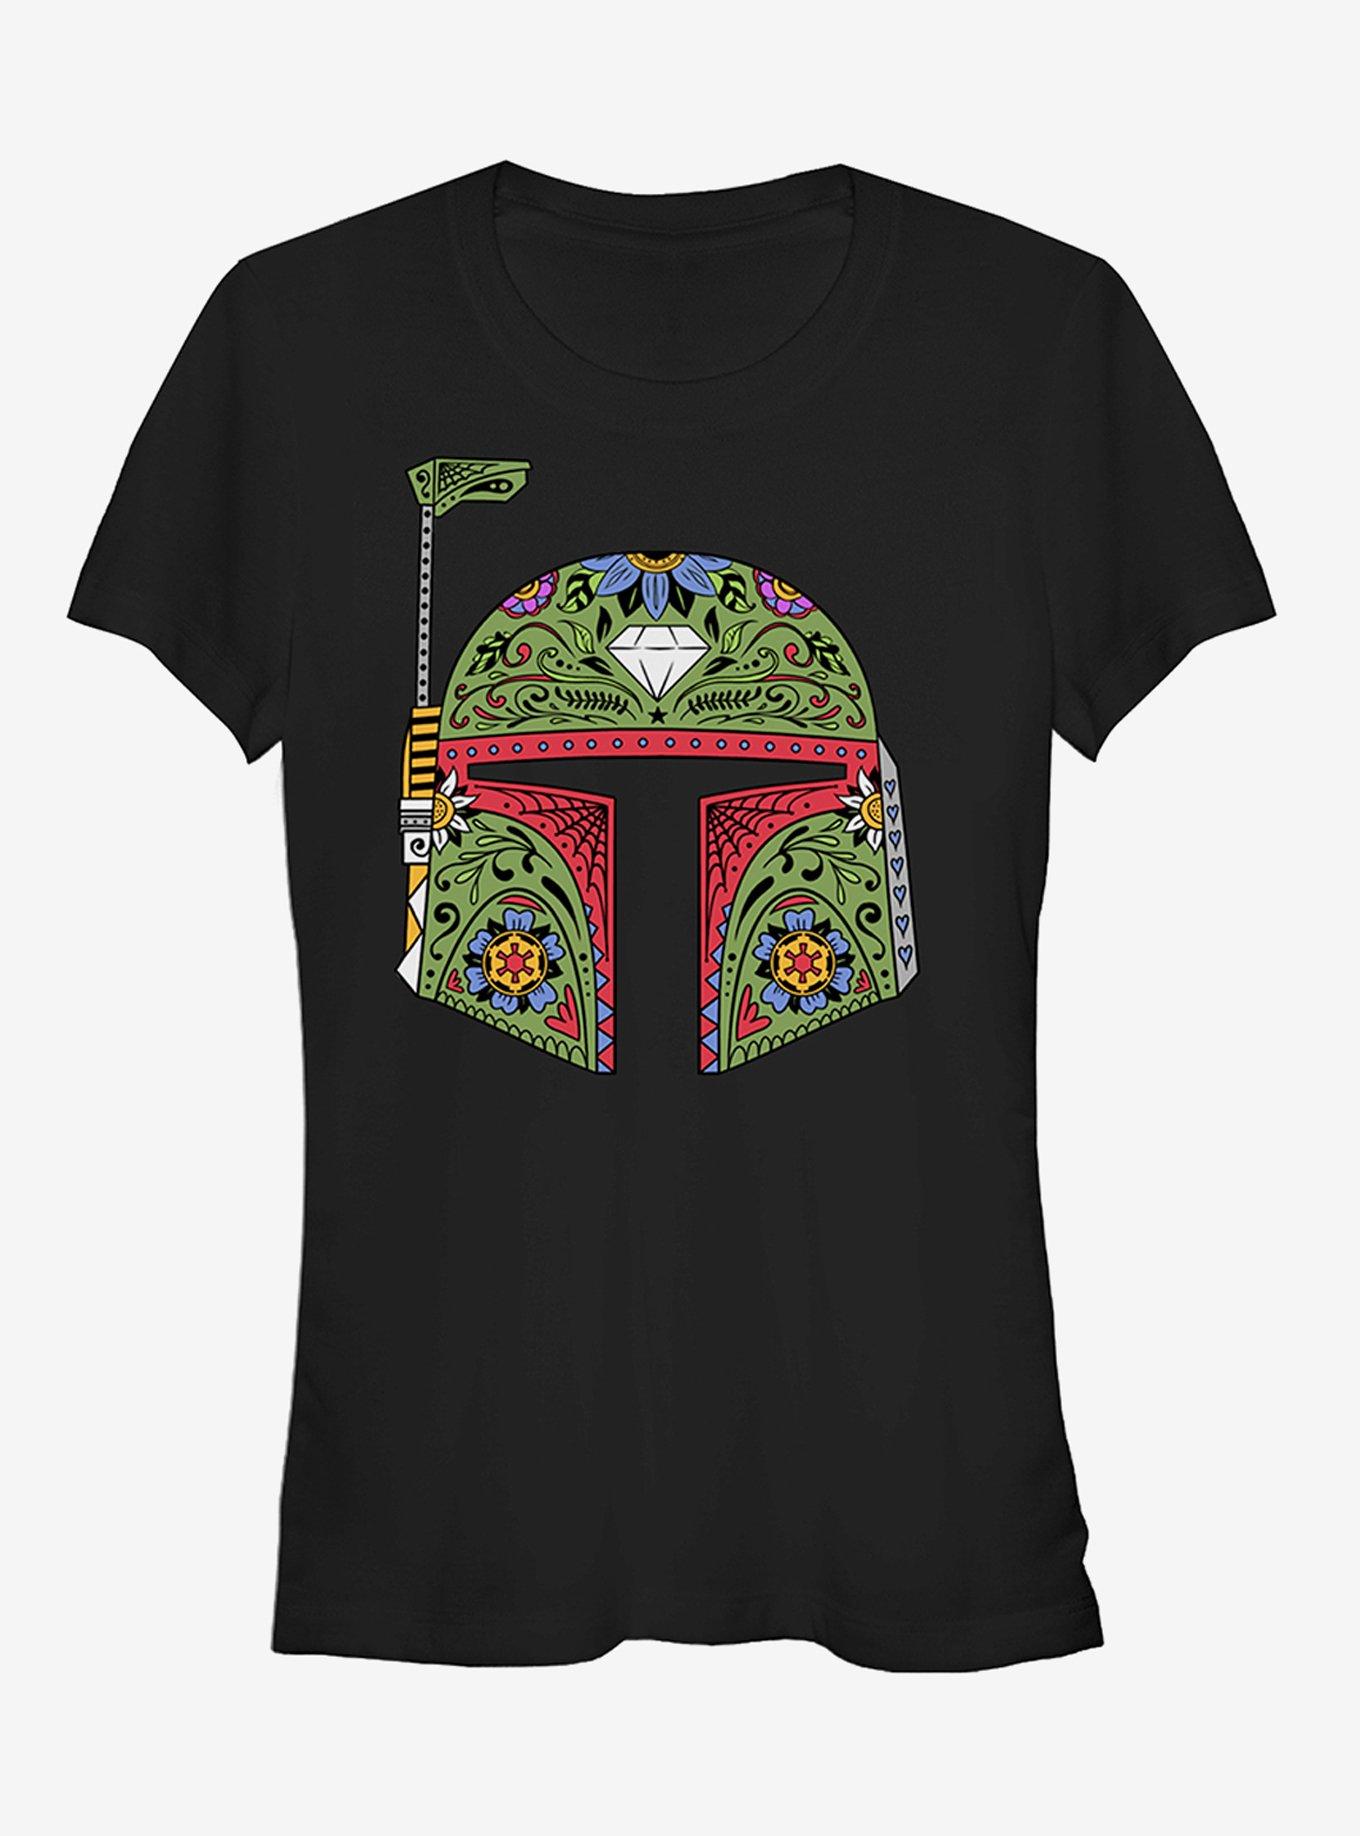 Star Wars Boba Fett Sugar Skull Girls T-Shirt